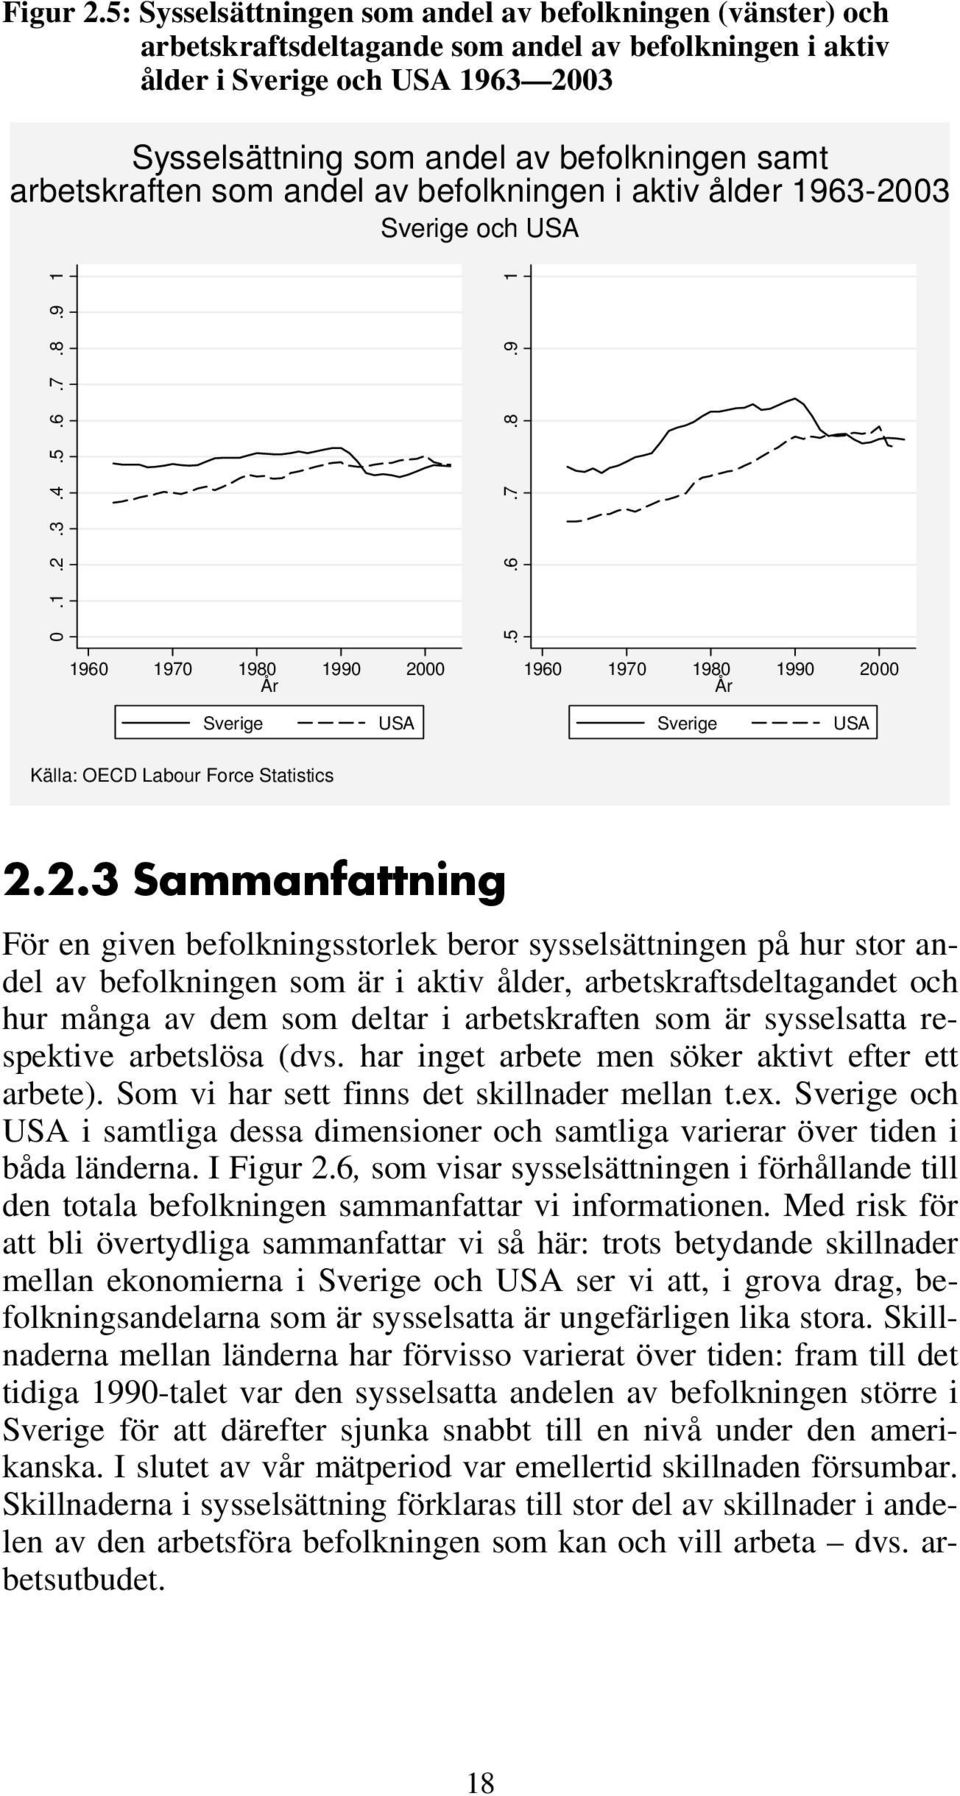 arbetskraften som andel av befolkningen i aktiv ålder 1963-2003 Sverige och USA 0.1.2.3.4.5.6.7.8.